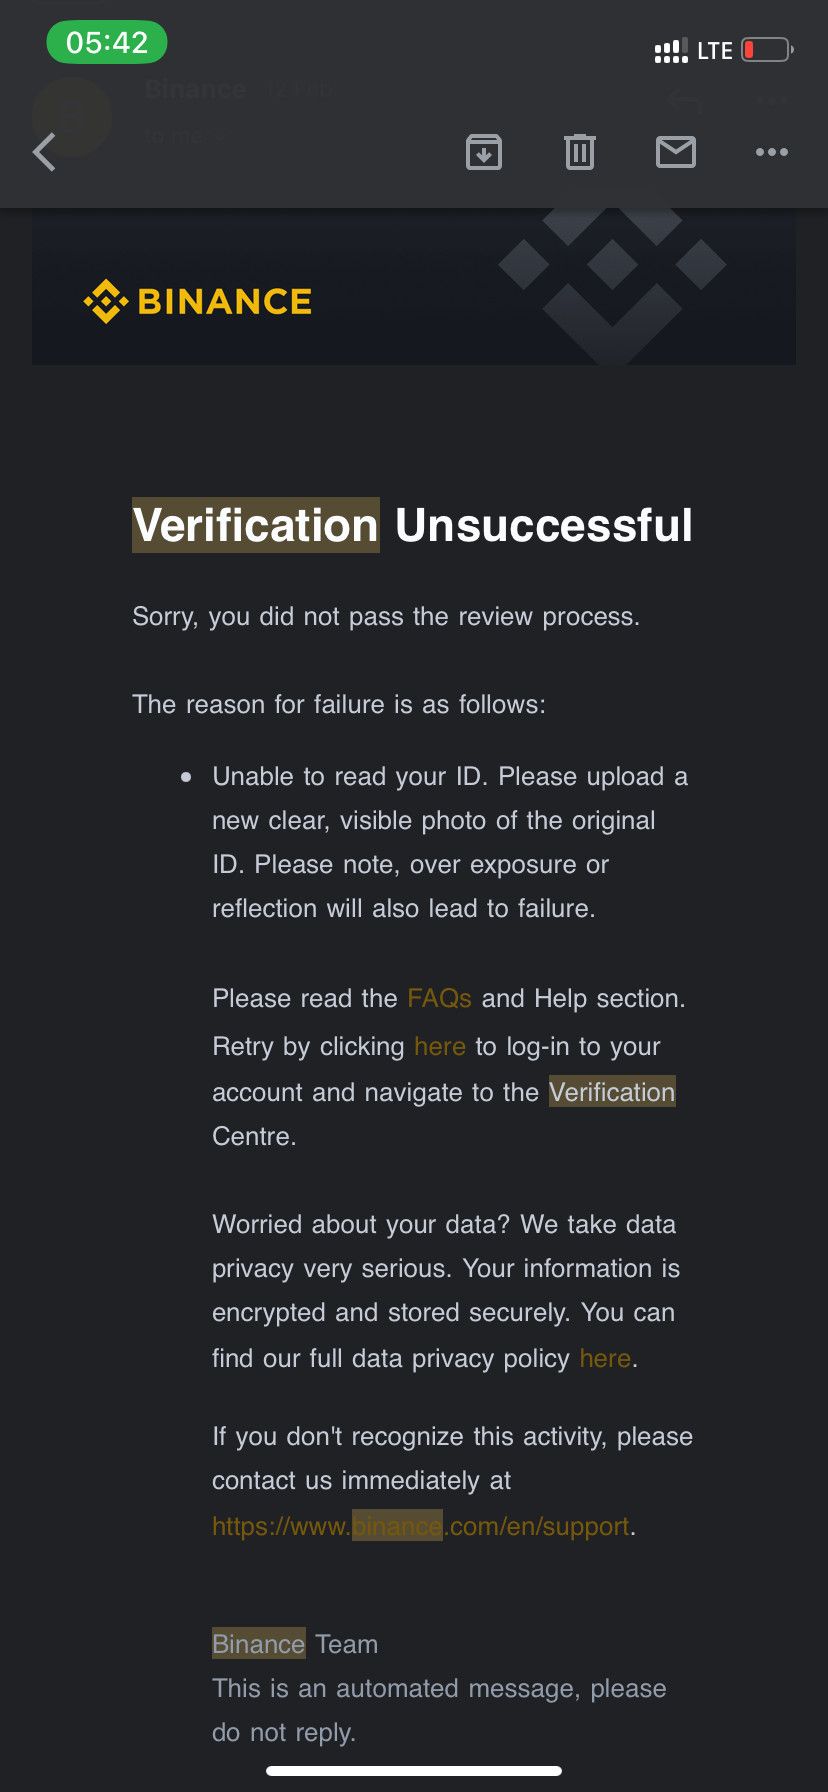 Binance verification unsuccessful message